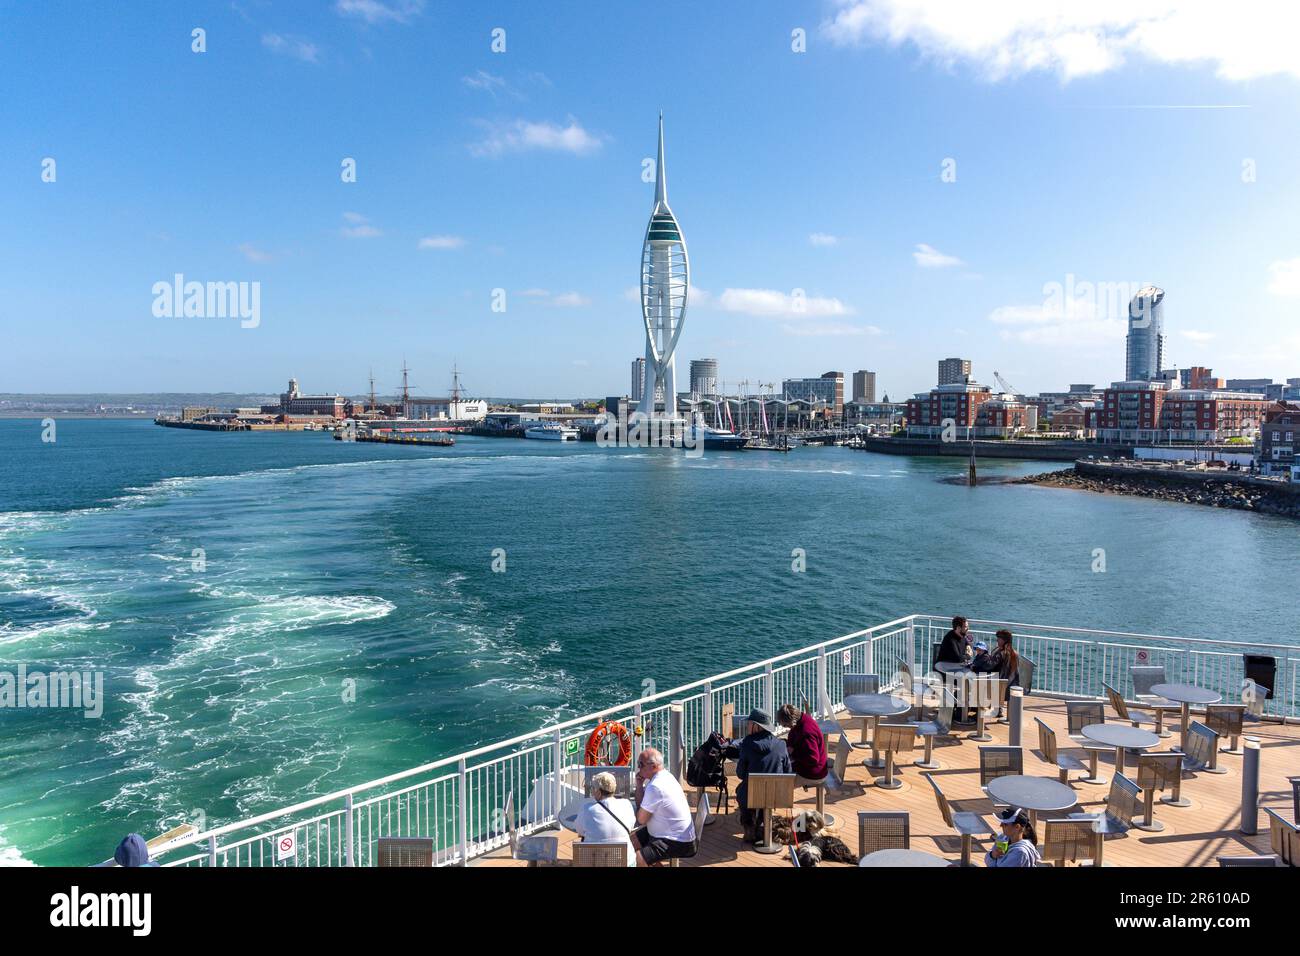 Spinnaker Tower und Gun Wharf von Wightlink Ferry, Portsmouth Harbour, Portsmouth, Hampshire, England, Vereinigtes Königreich Stockfoto